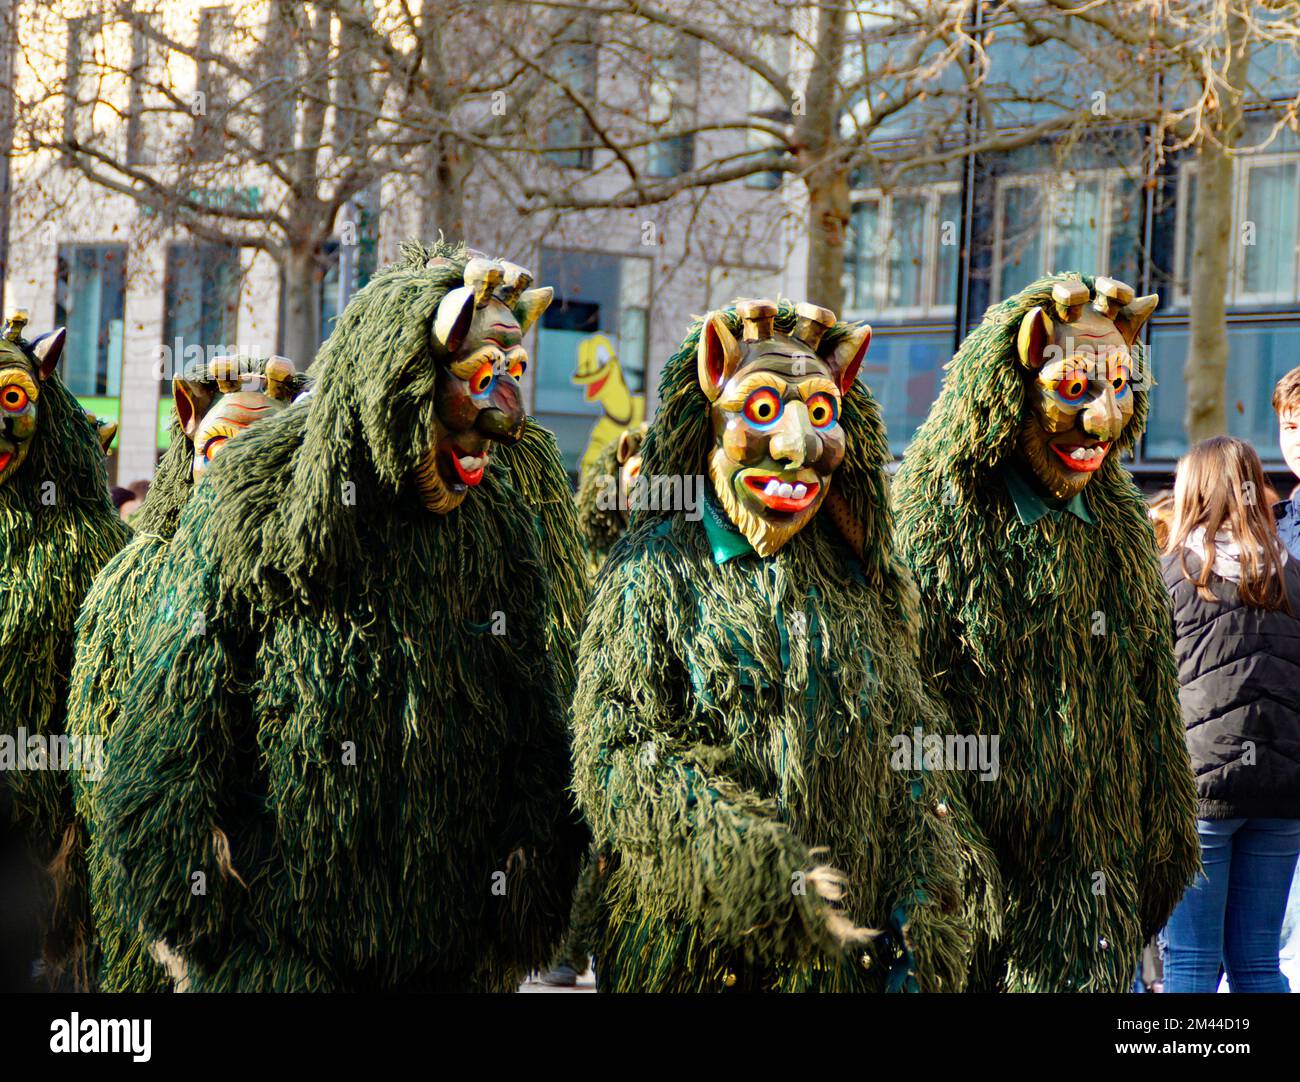 Gente vestida con ropa divertida y máscaras celebrando el tradicional carnaval alemán Shrovetide llamado Fasching o Narrensprung (Ulm, Alemania) Foto de stock